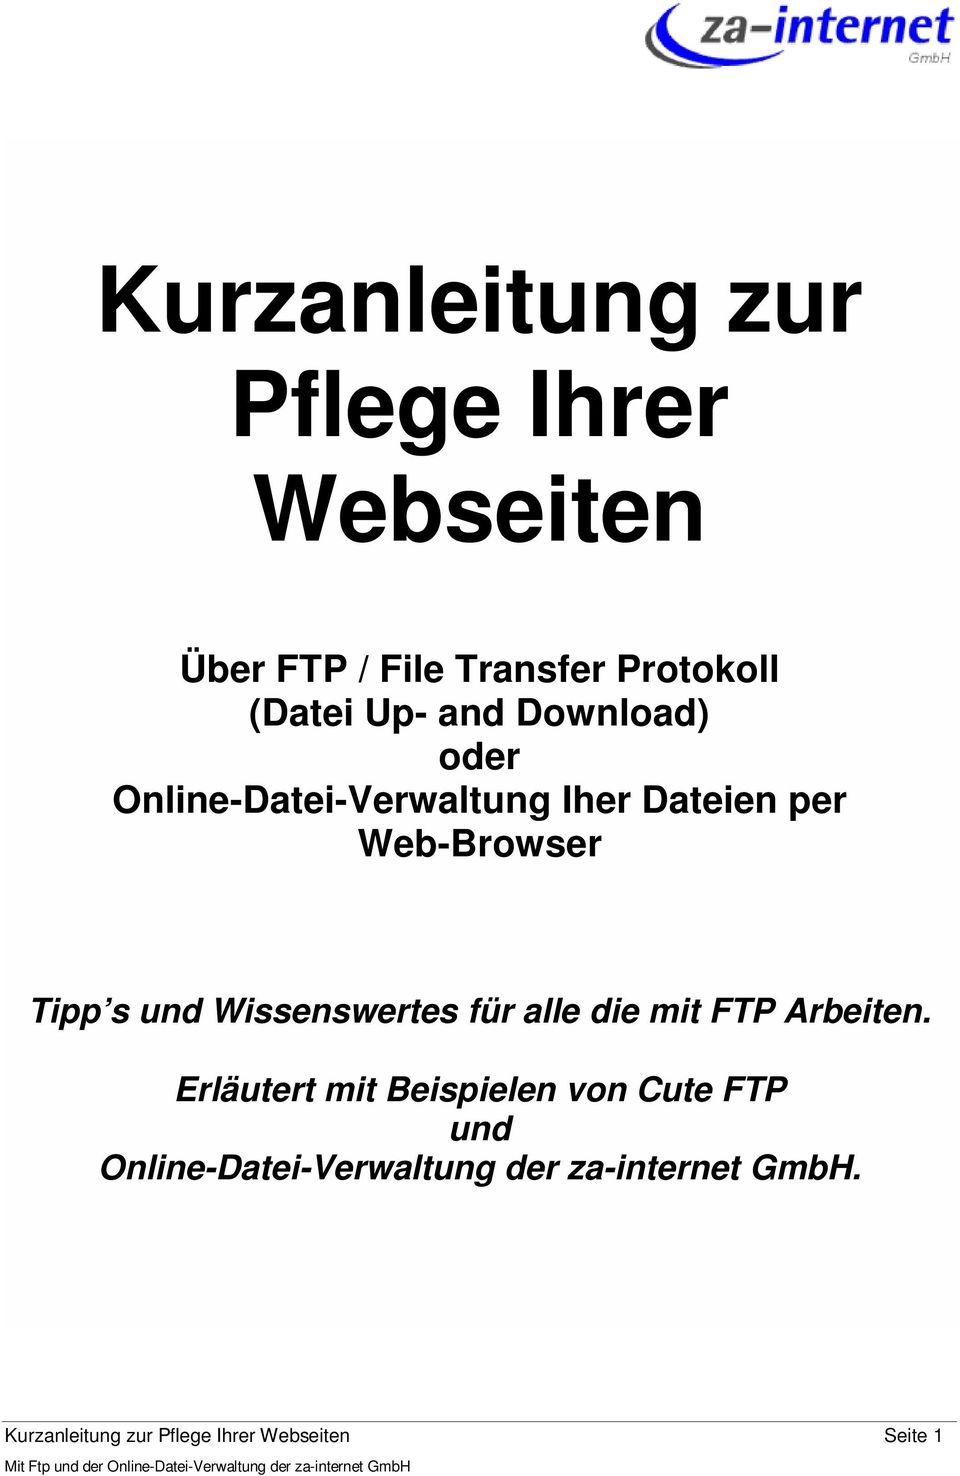 FTP Arbeiten. Erläutert mit Beispielen von Cute FTP und Online-Datei-Verwaltung der za-internet GmbH.